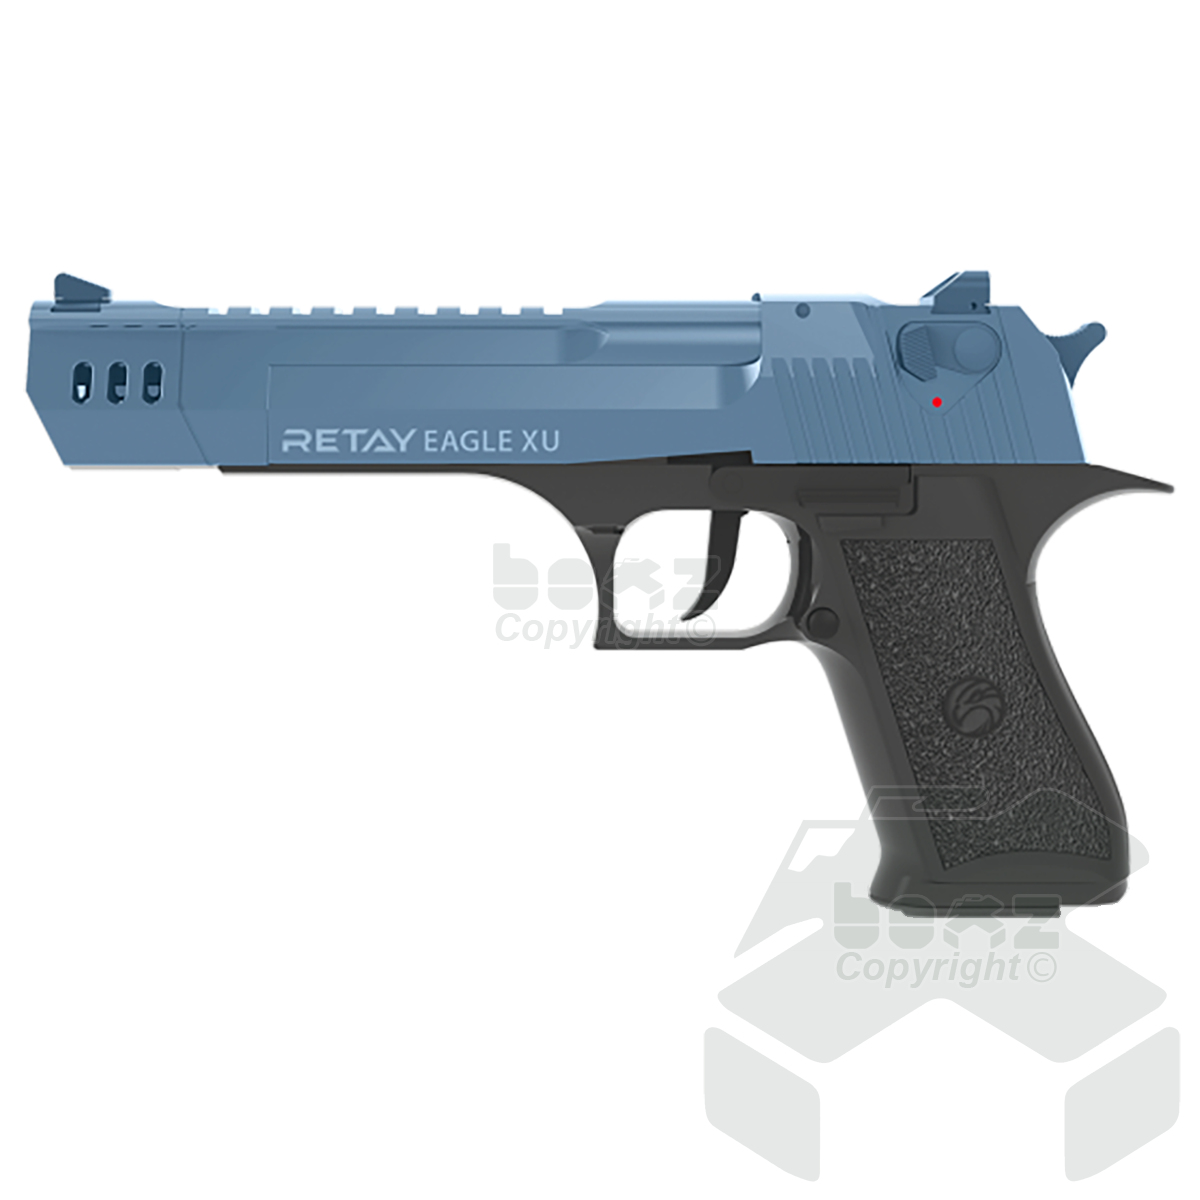 Retay EagleXU Blank Firing Pistol - 9mm - Black